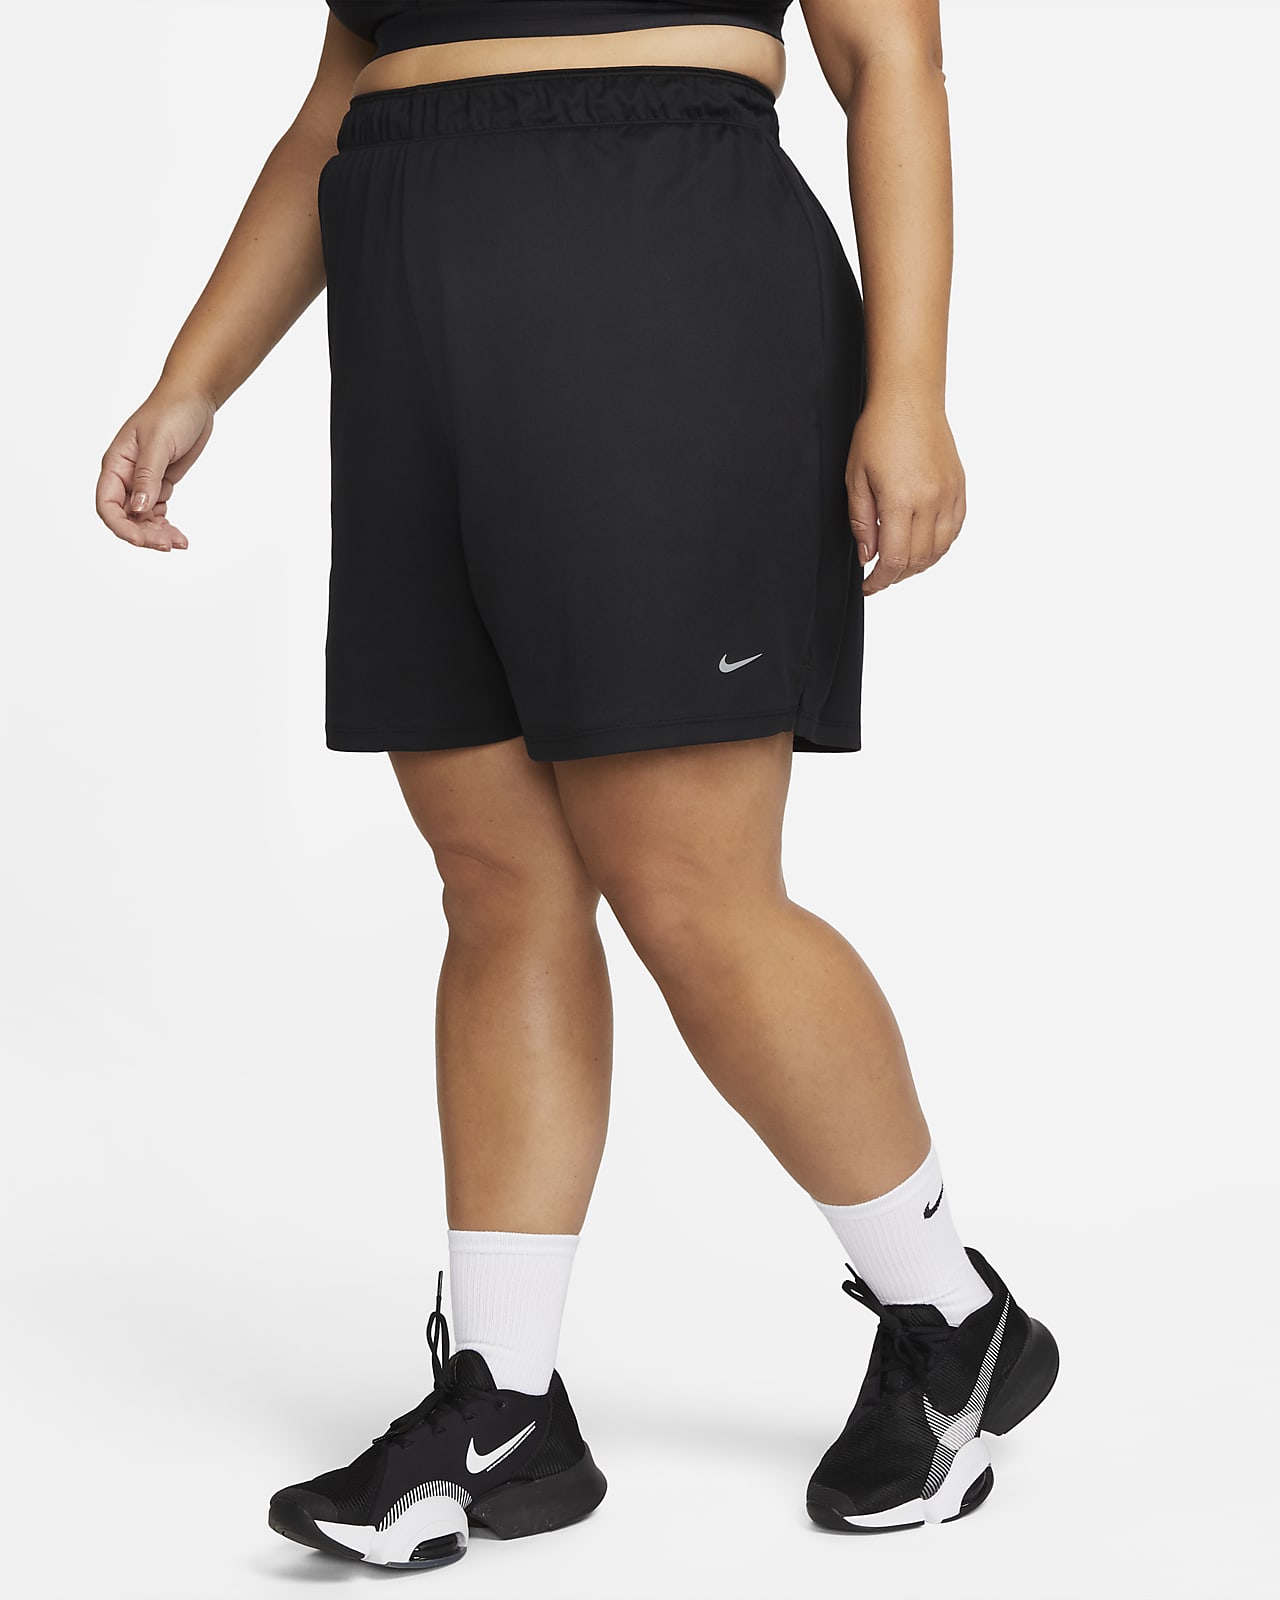 Shorts sin forro de 13 cm de tiro medio para mujer (talla grande) Nike Dri-FIT Attack